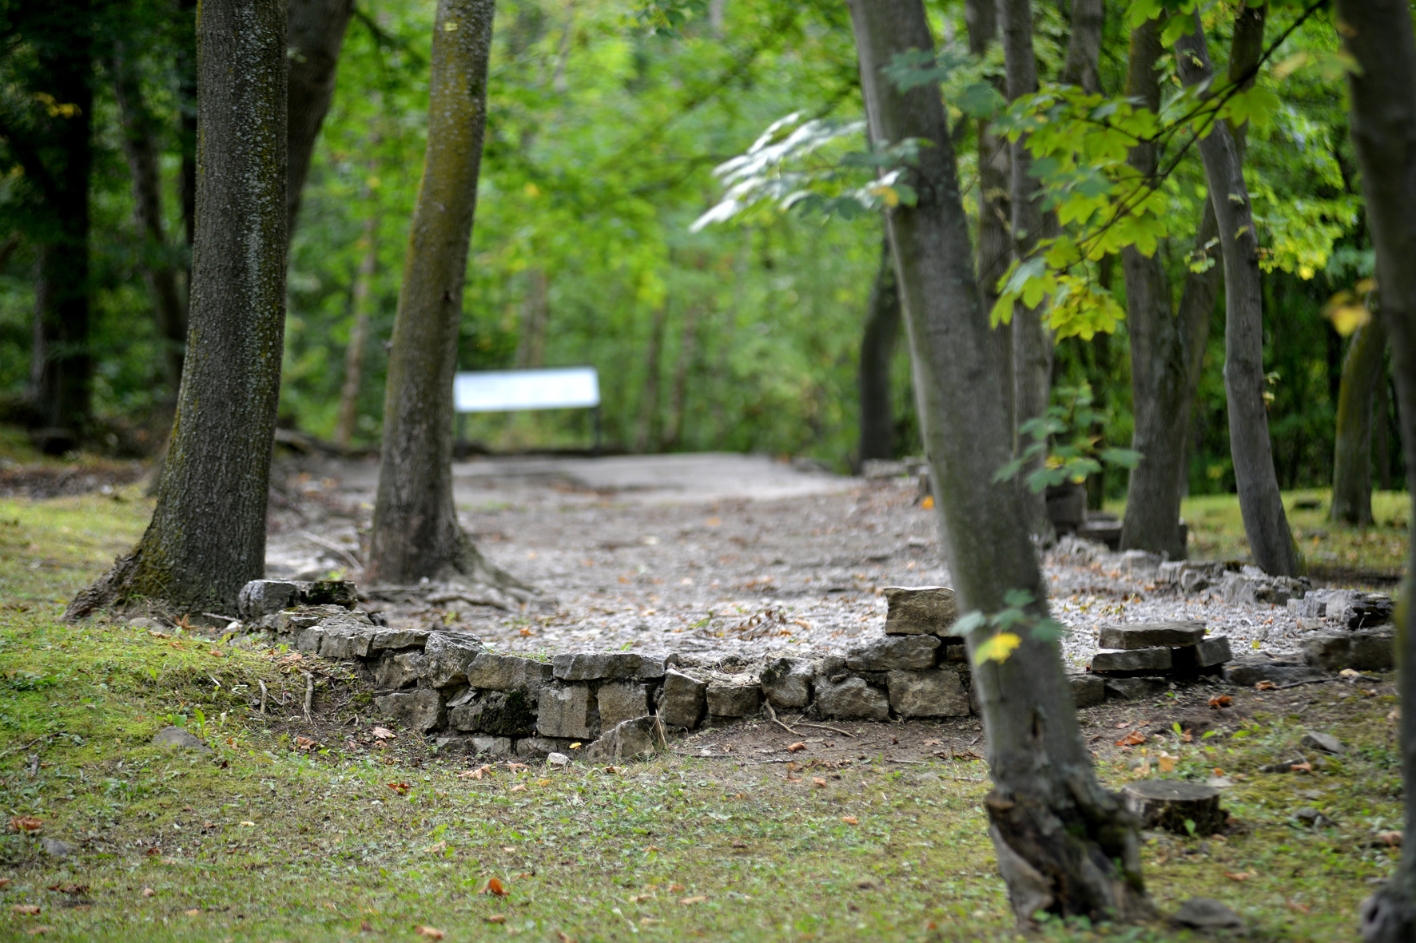 Im Zentrum des Bildes steht ein kleiner, unregelmäßiger Mauerrest, der eine graue Kiesfläche umschließt, im Wald. 